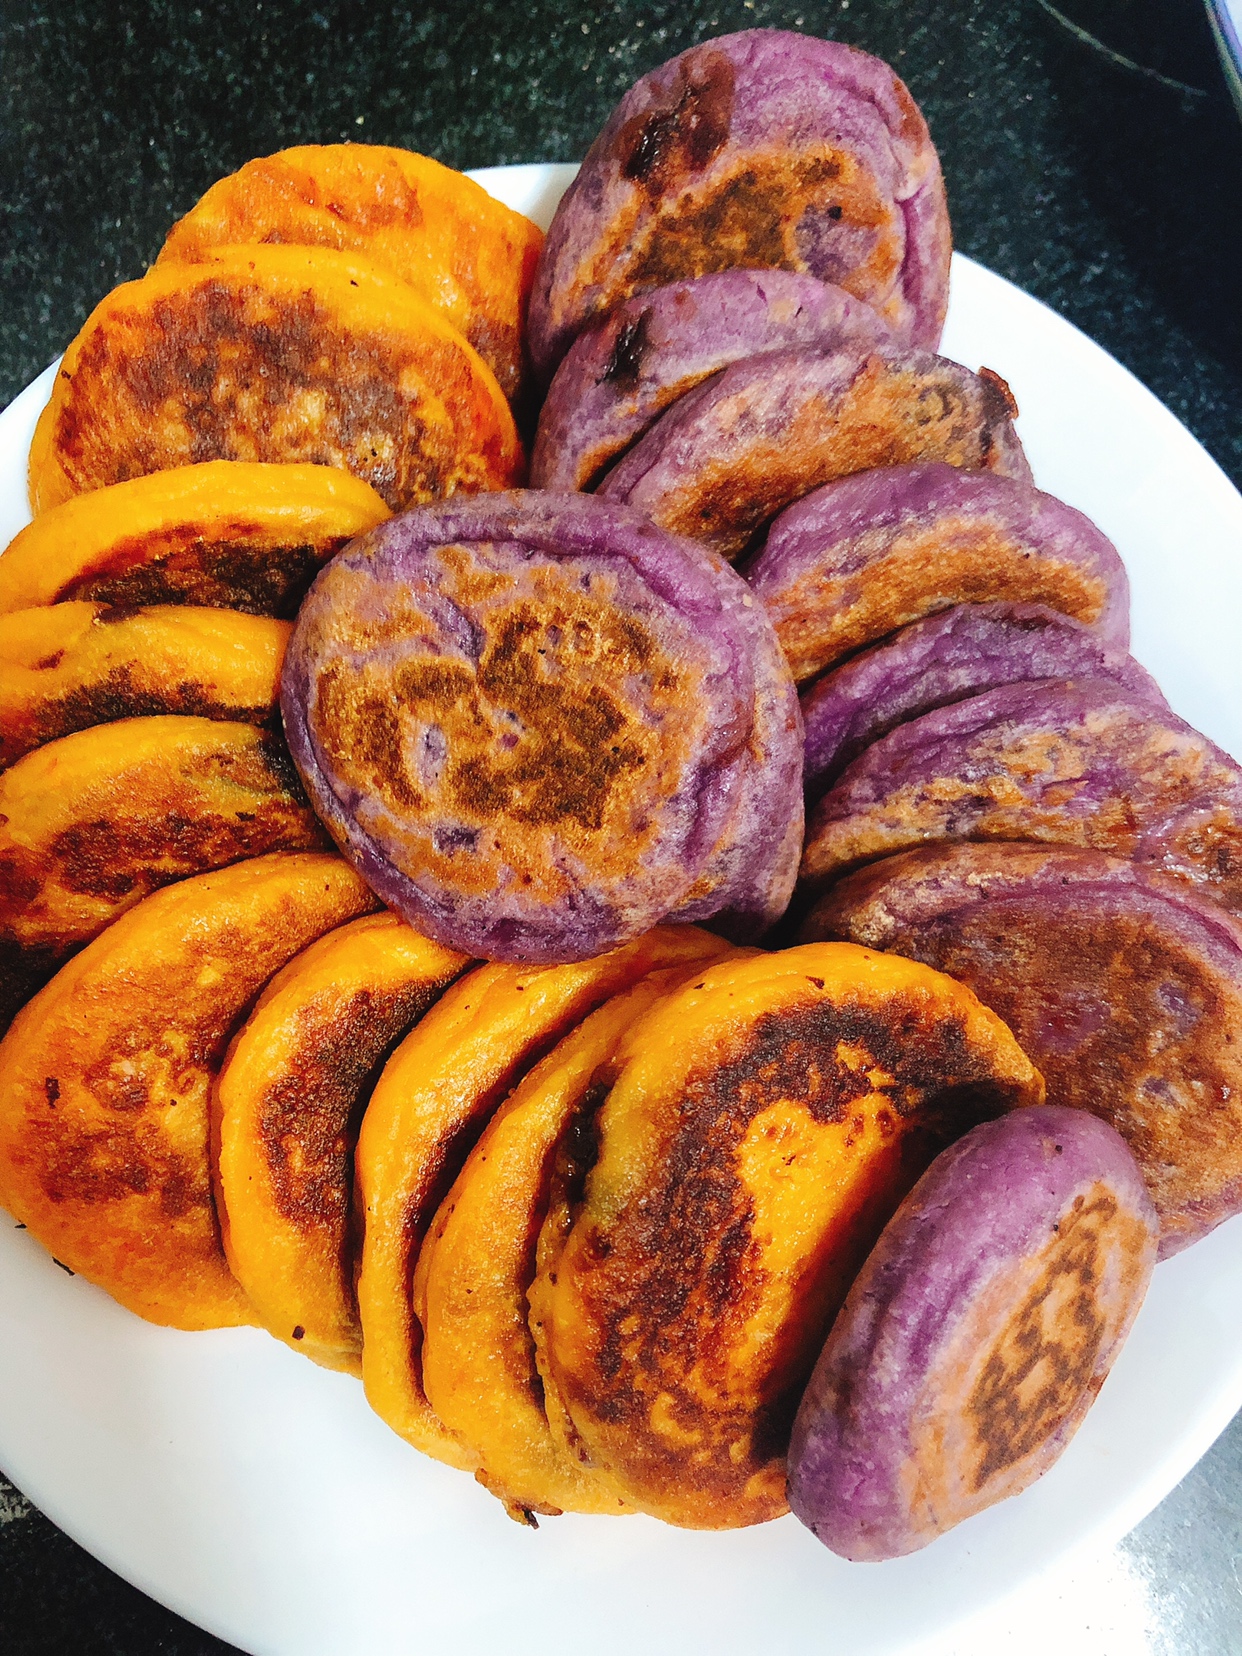 红薯紫薯糯米饼